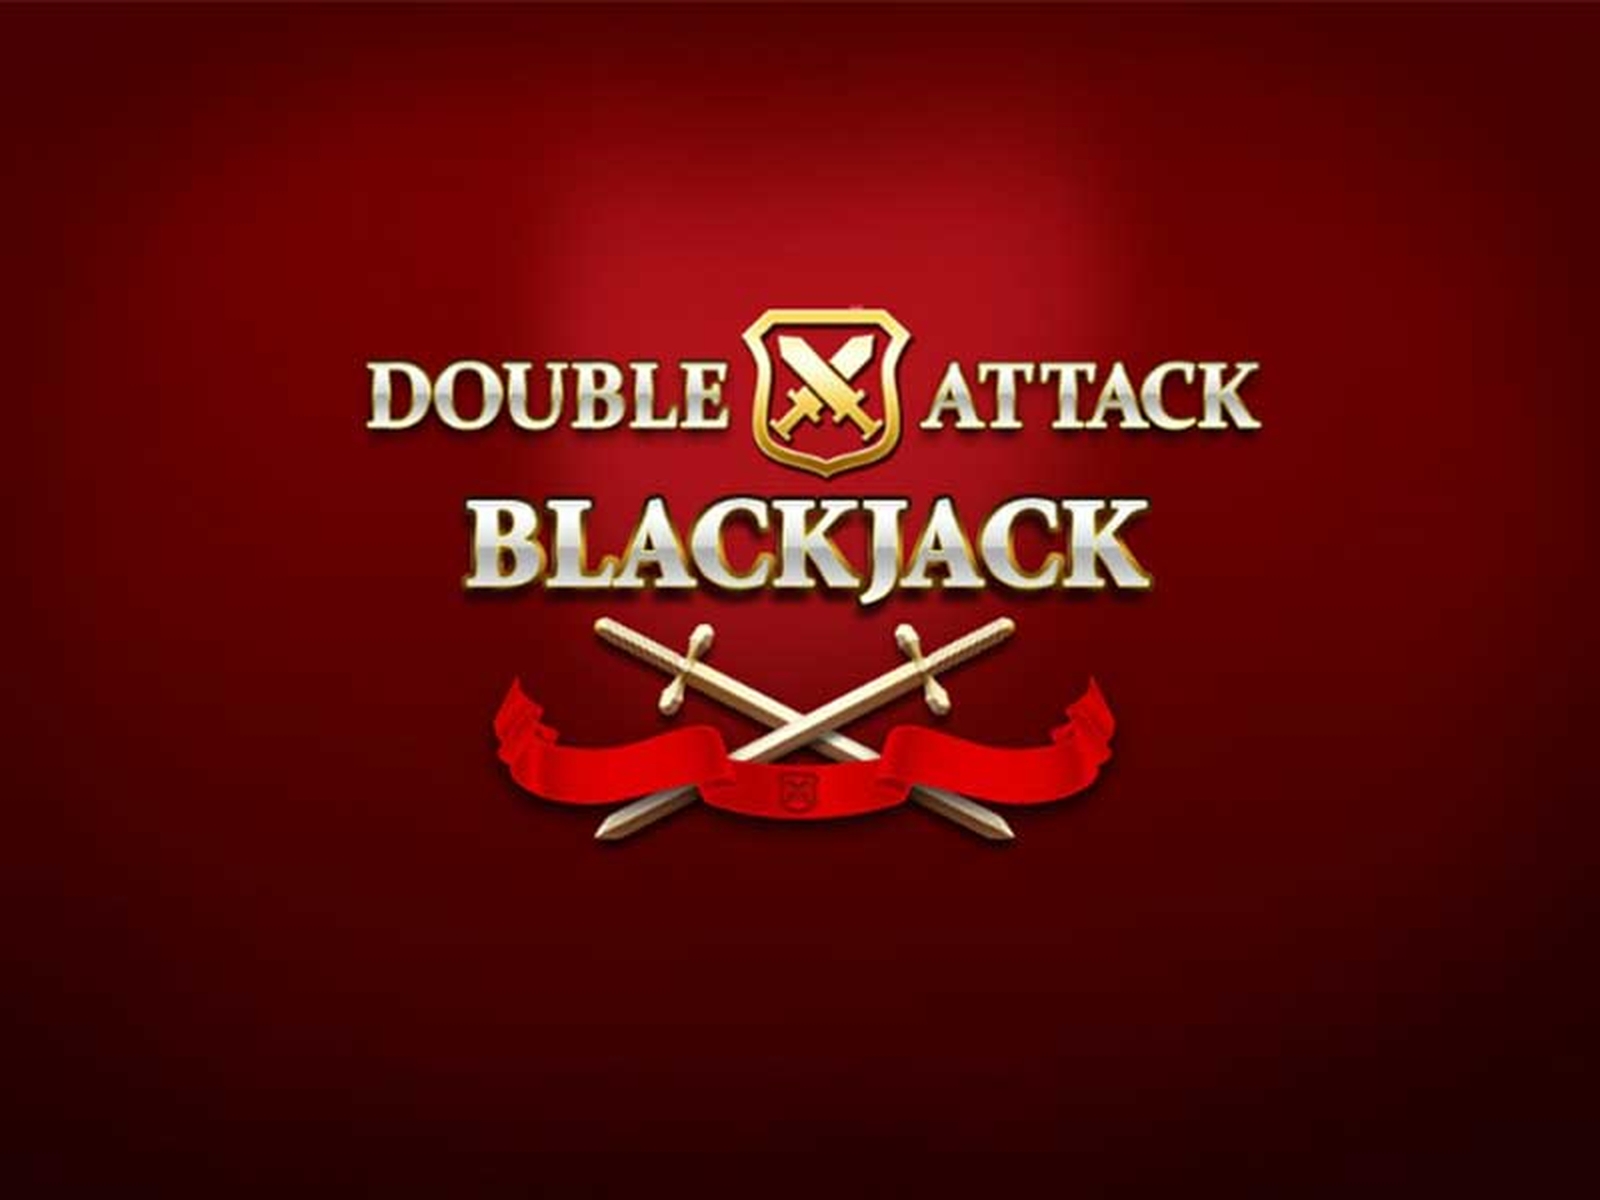 Double Attack Blackjack demo